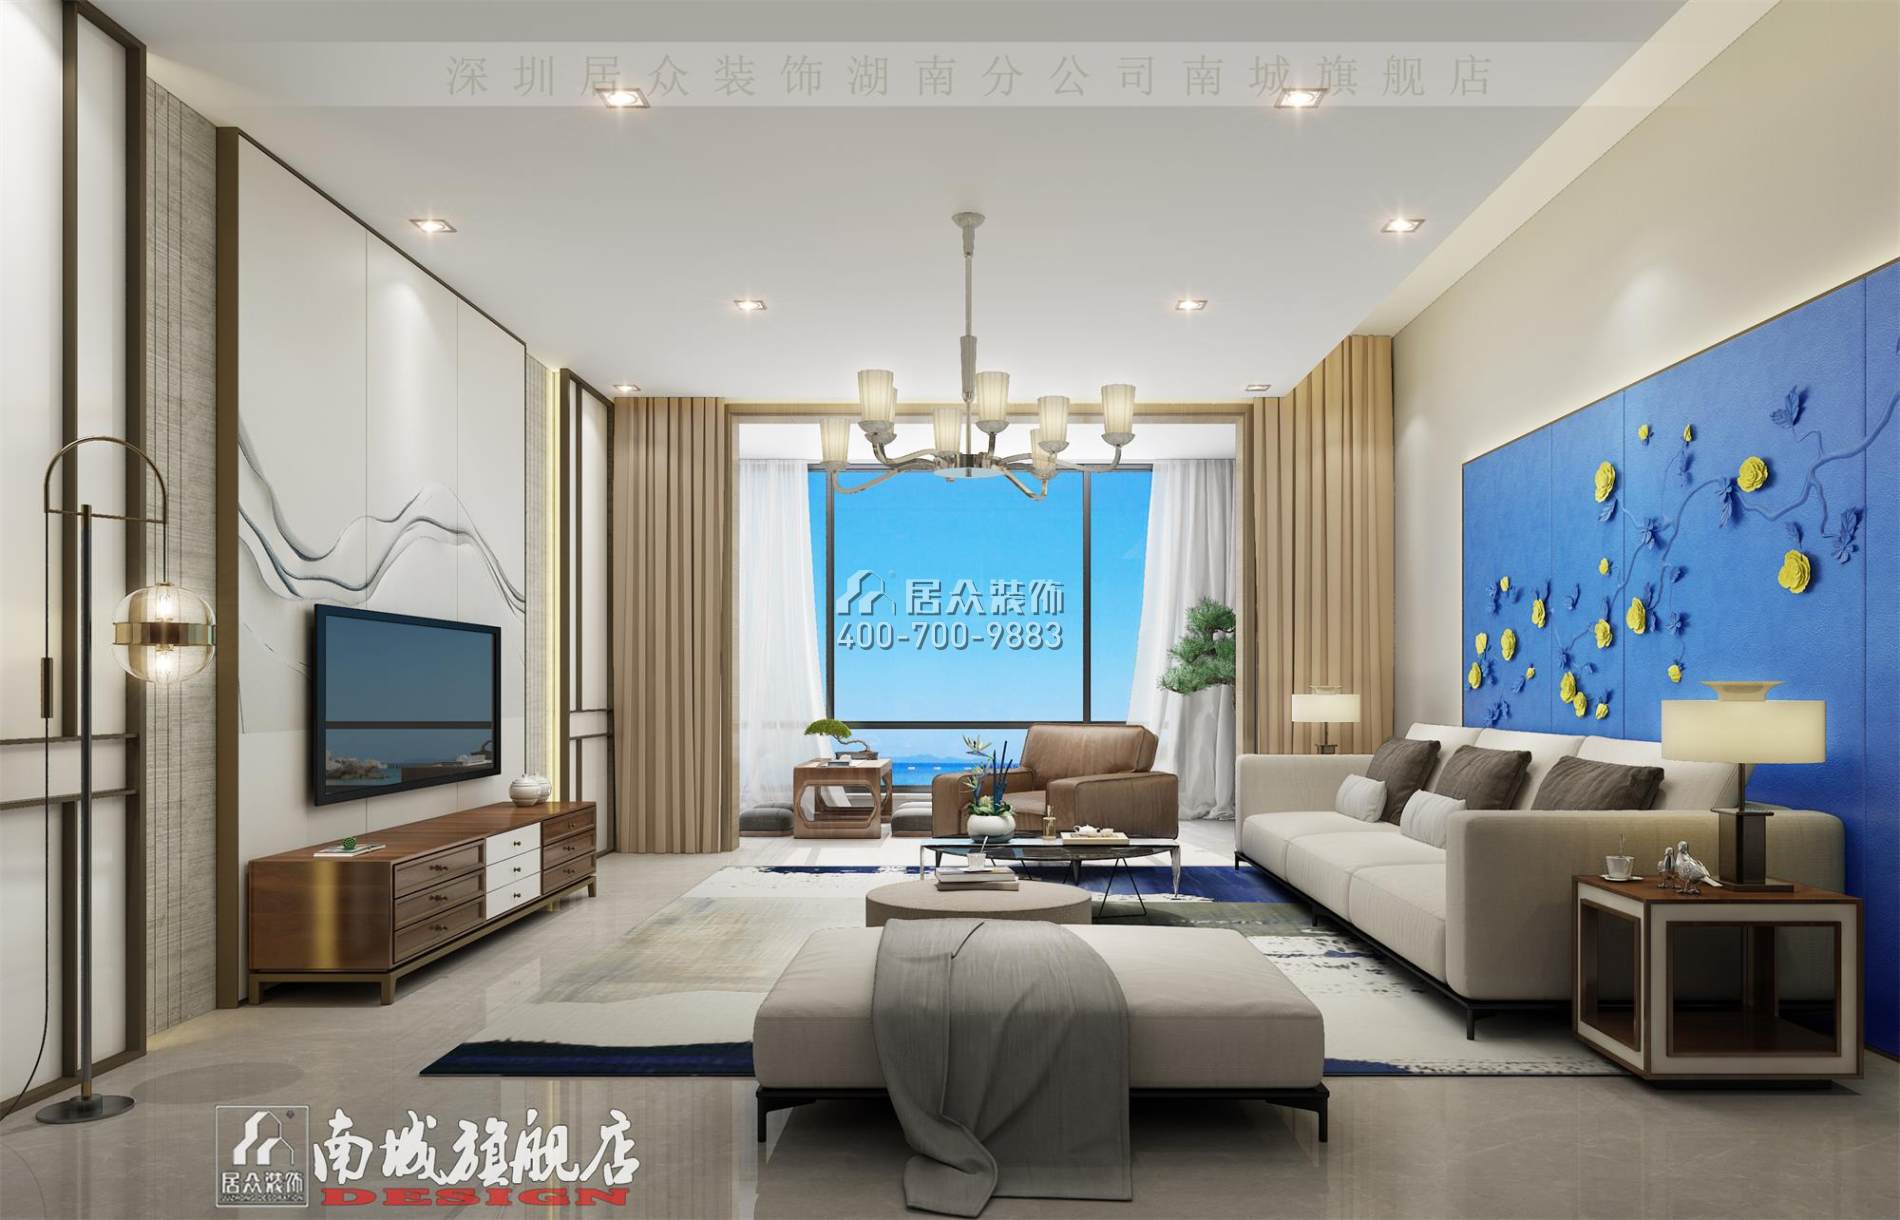 中建江山壹号232平方米中式风格平层户型客厅（中国）科技有限公司官网效果图